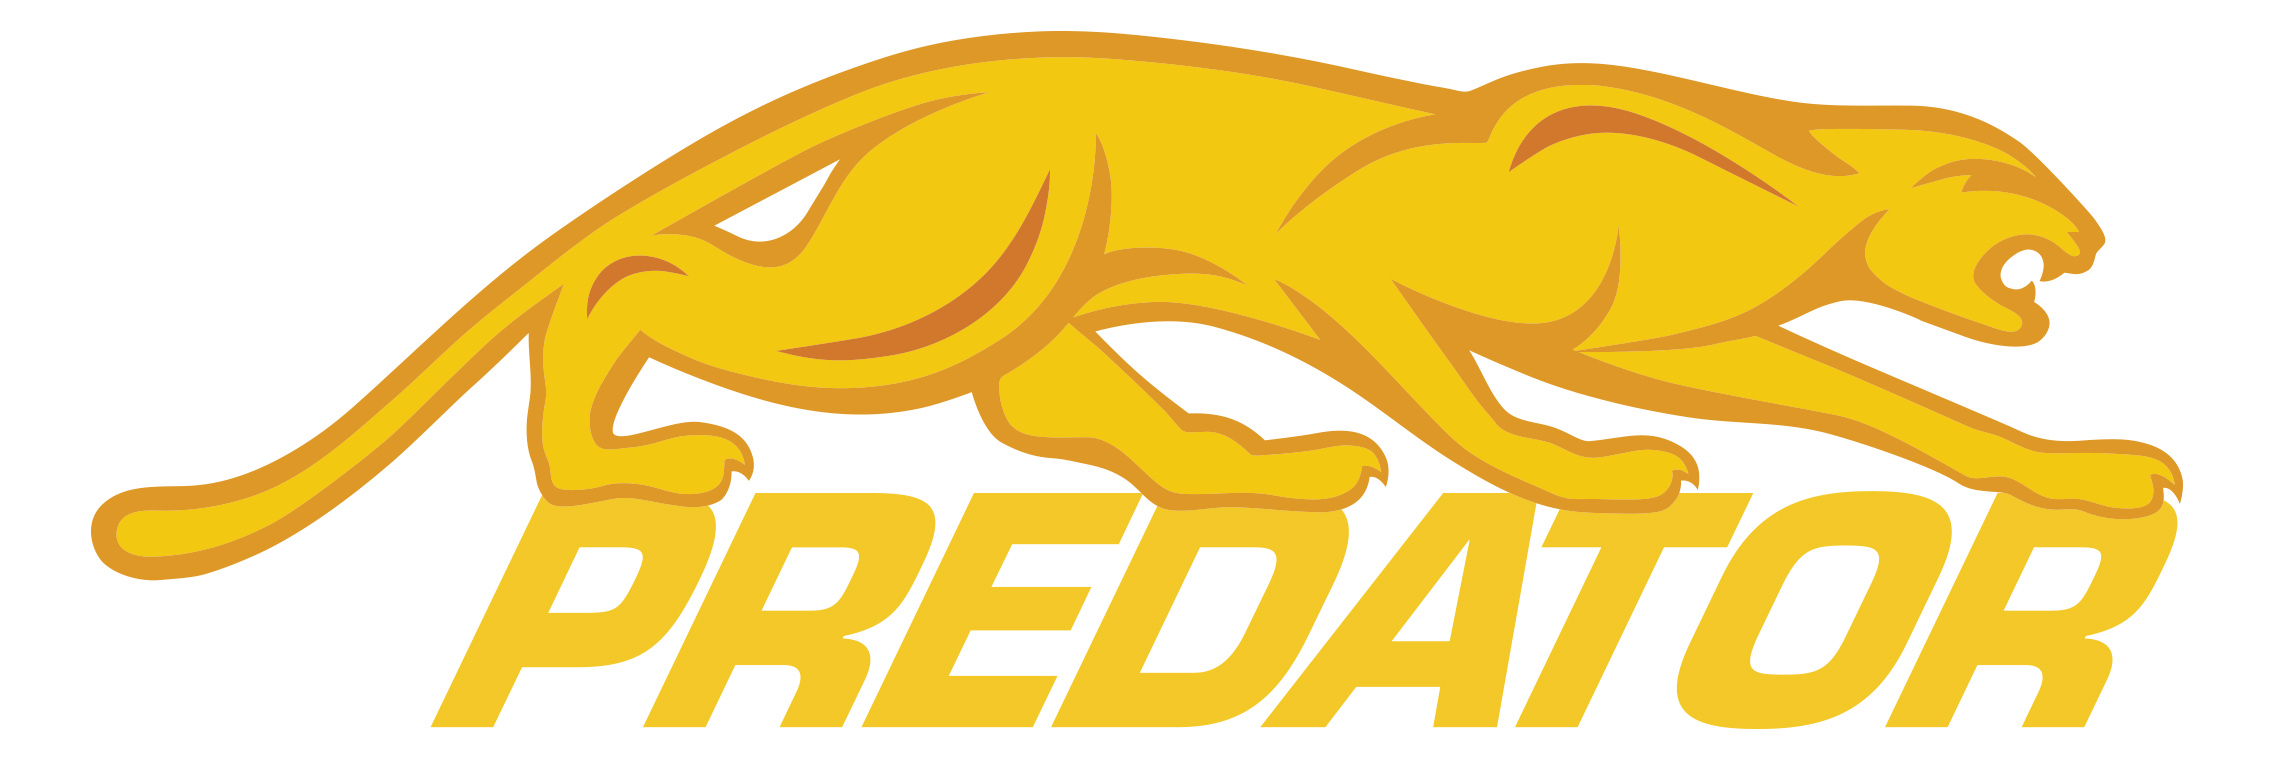 predator-logo.jpeg